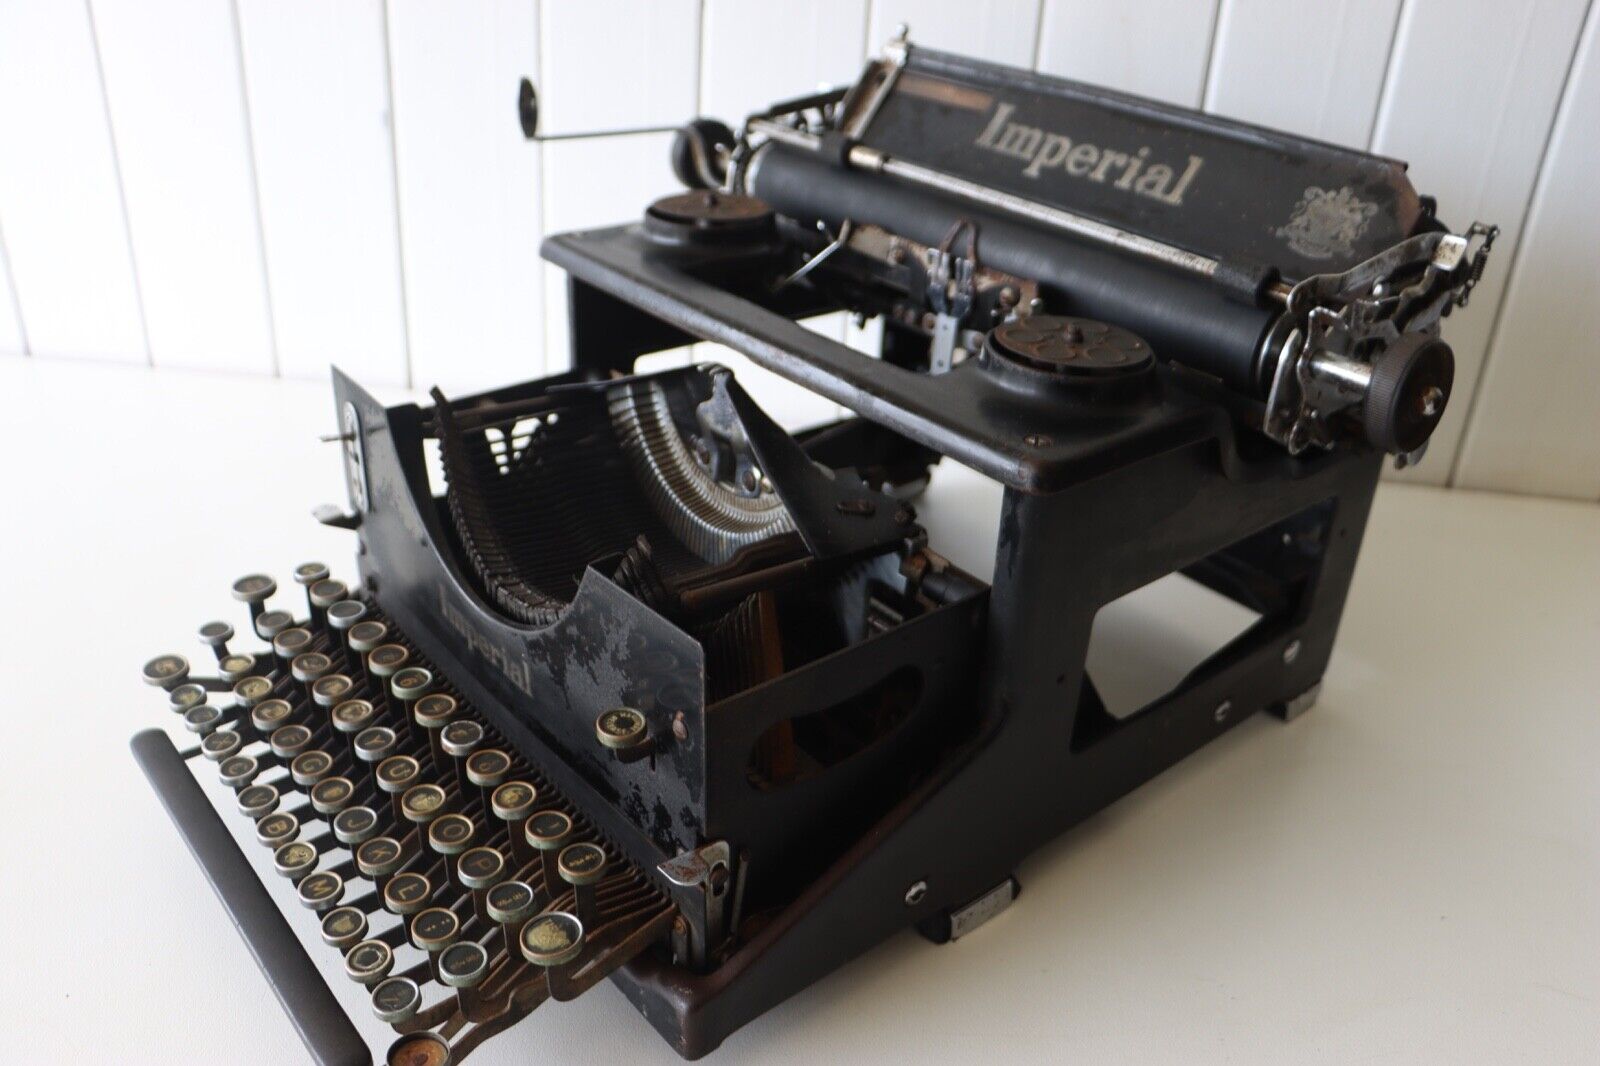 Antique Imperial Typewriter - Original Condition